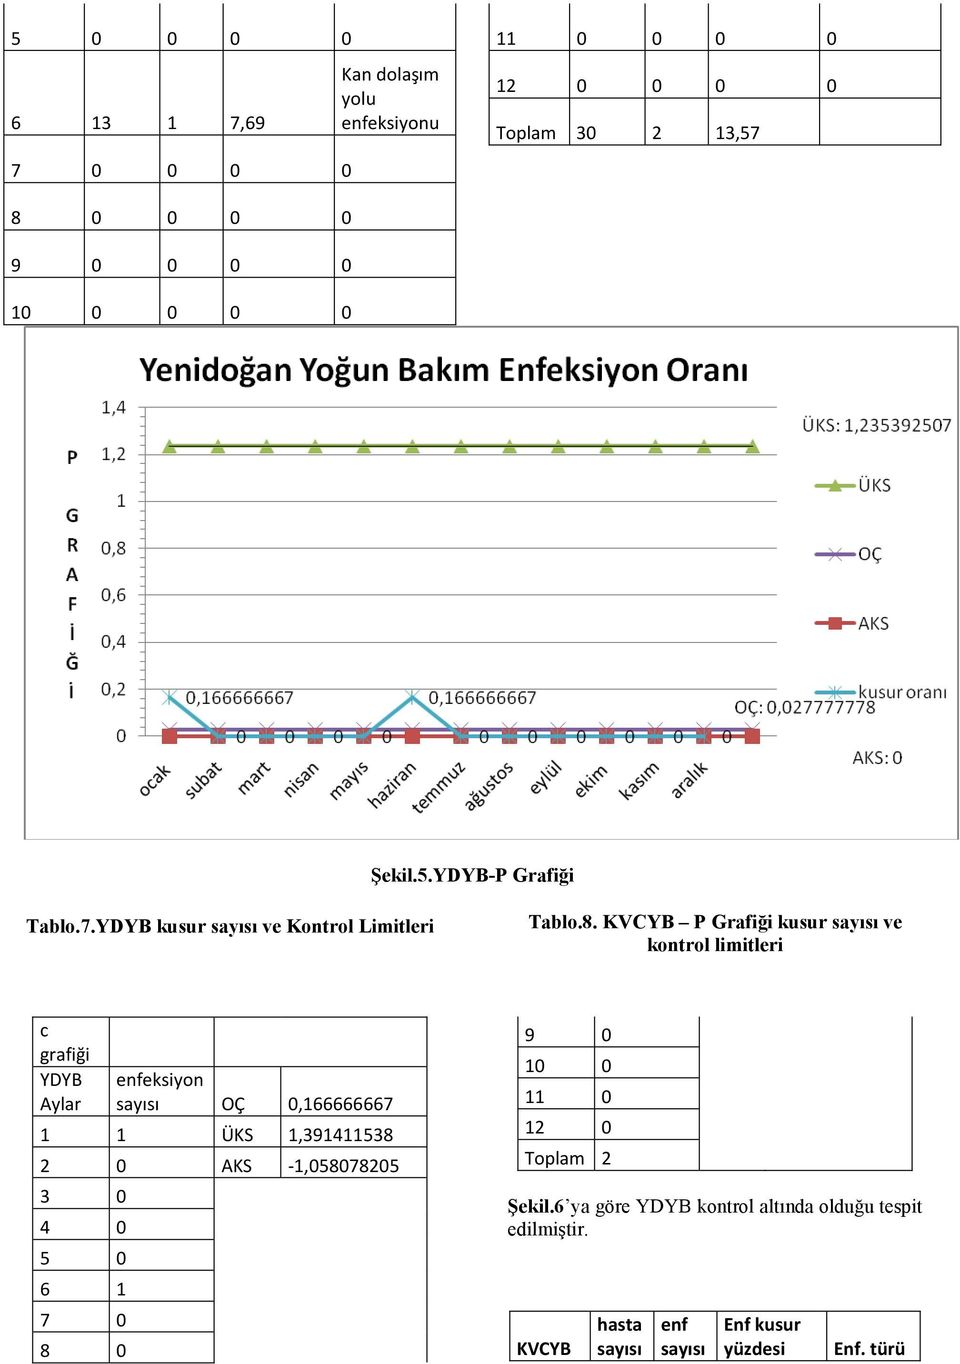 KVCYB P Grafiği kusur sayısı ve kontrol limitleri c grafiği YDYB Aylar enfeksiyon sayısı OÇ 0,166666667 1 1 ÜKS 1,391411538 2 0